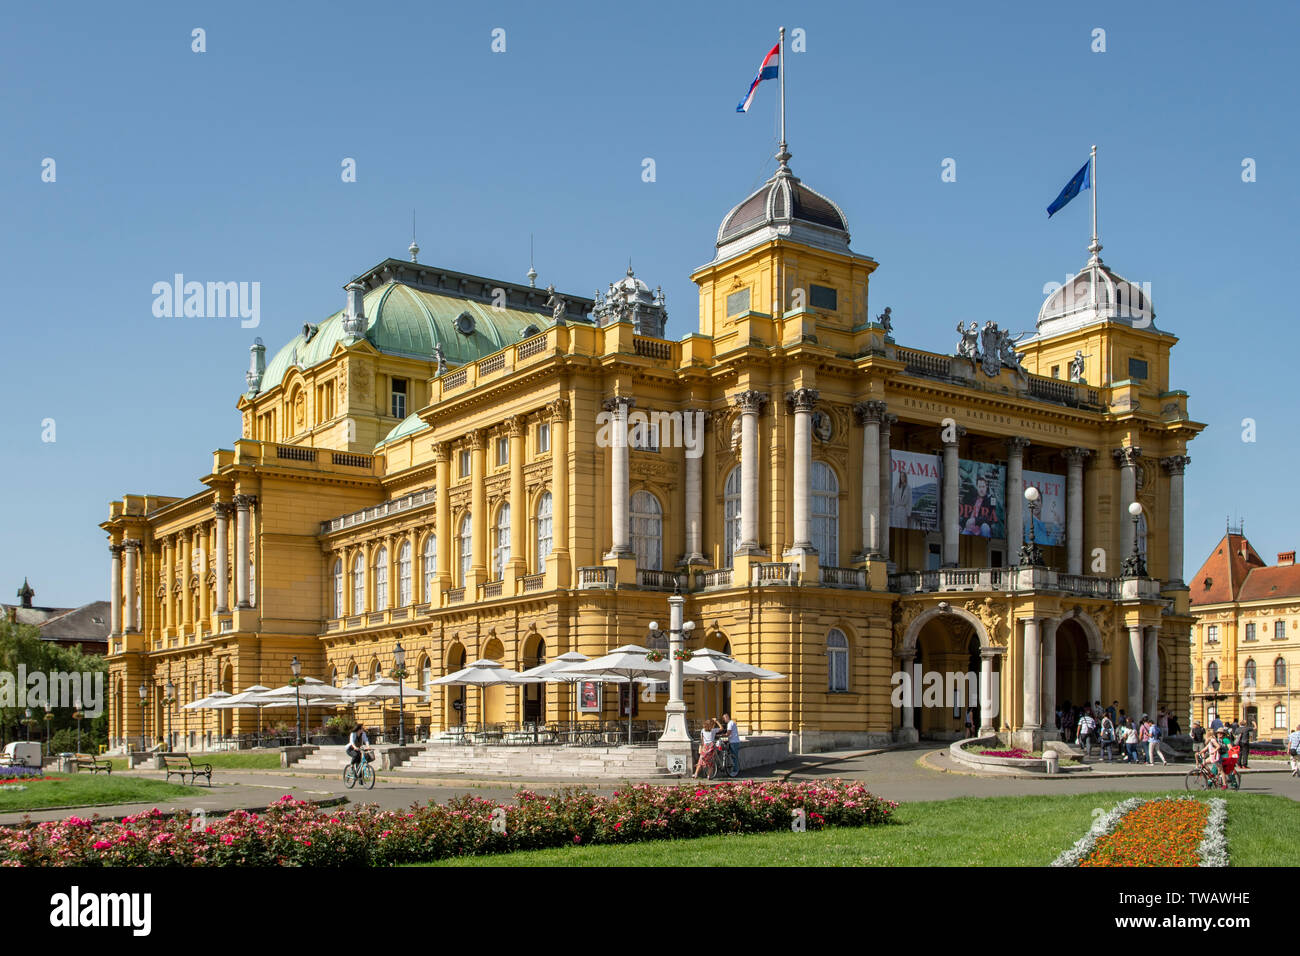 The National Theatre, Republic of Croatia Square, Zagreb, Croatia Stock Photo